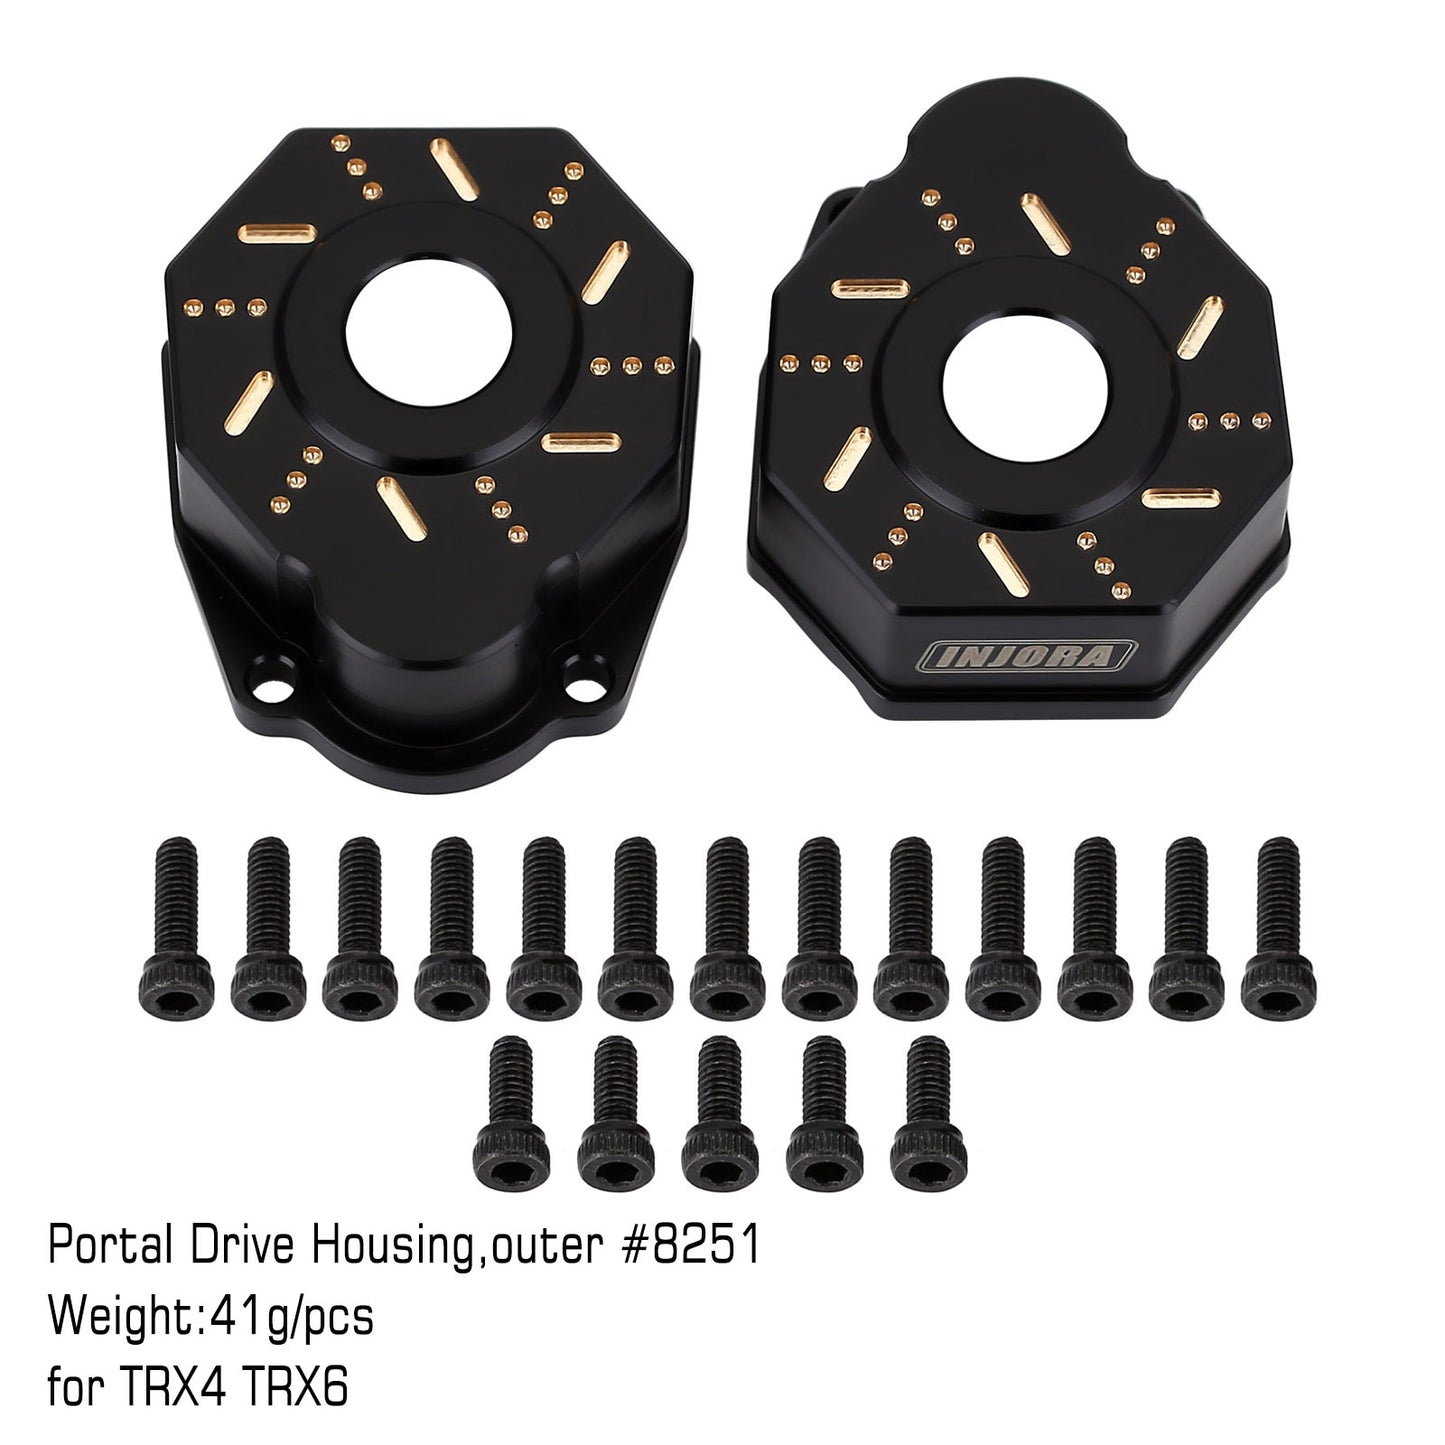 INJORA Zware Zwarte Coating Messing Contragewicht Portal Drive Behuizing Voor 1/10 RC Crawler Auto TRX4 TRX6 Upgrade Onderdelen